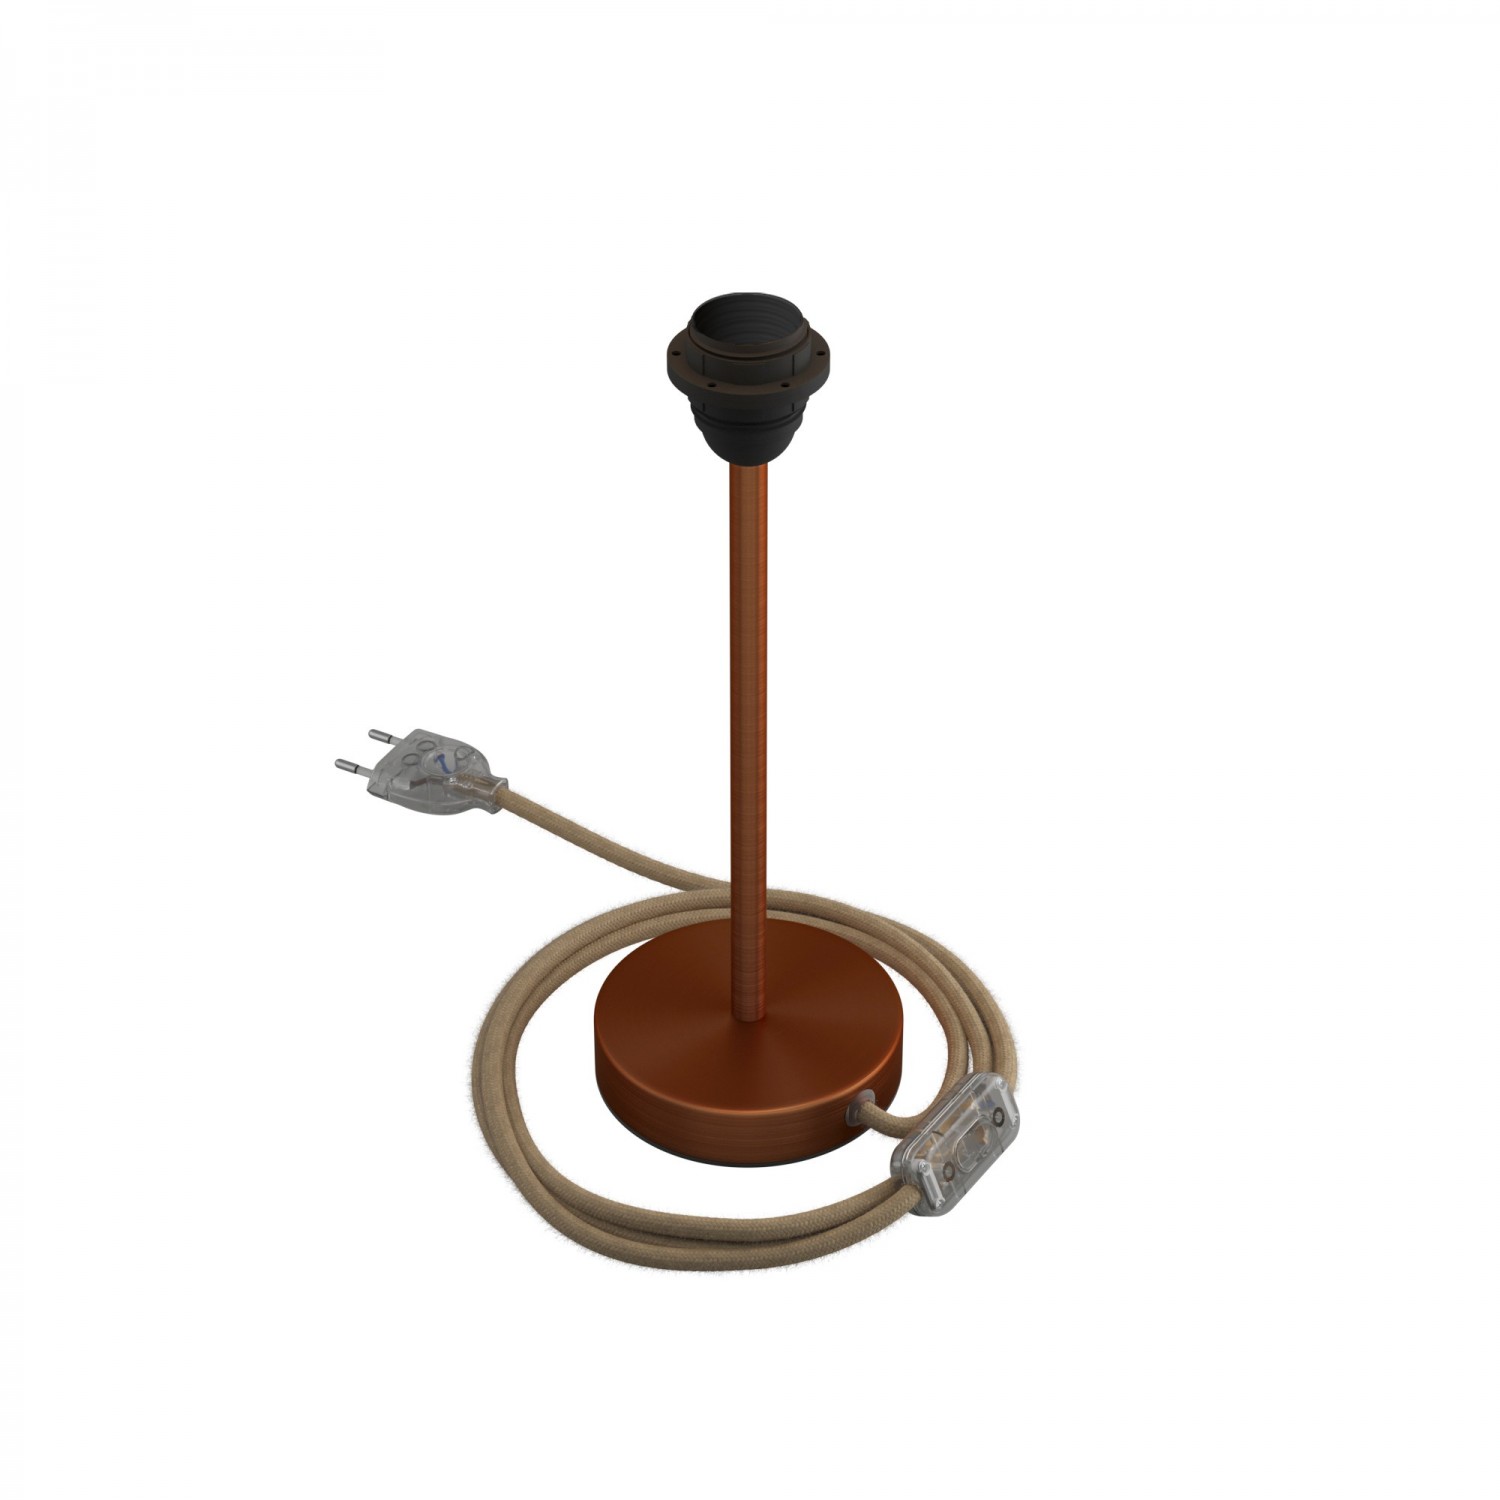 Alzaluce para pantalla - Lámpara de mesa de metal con clavija de 2 polos